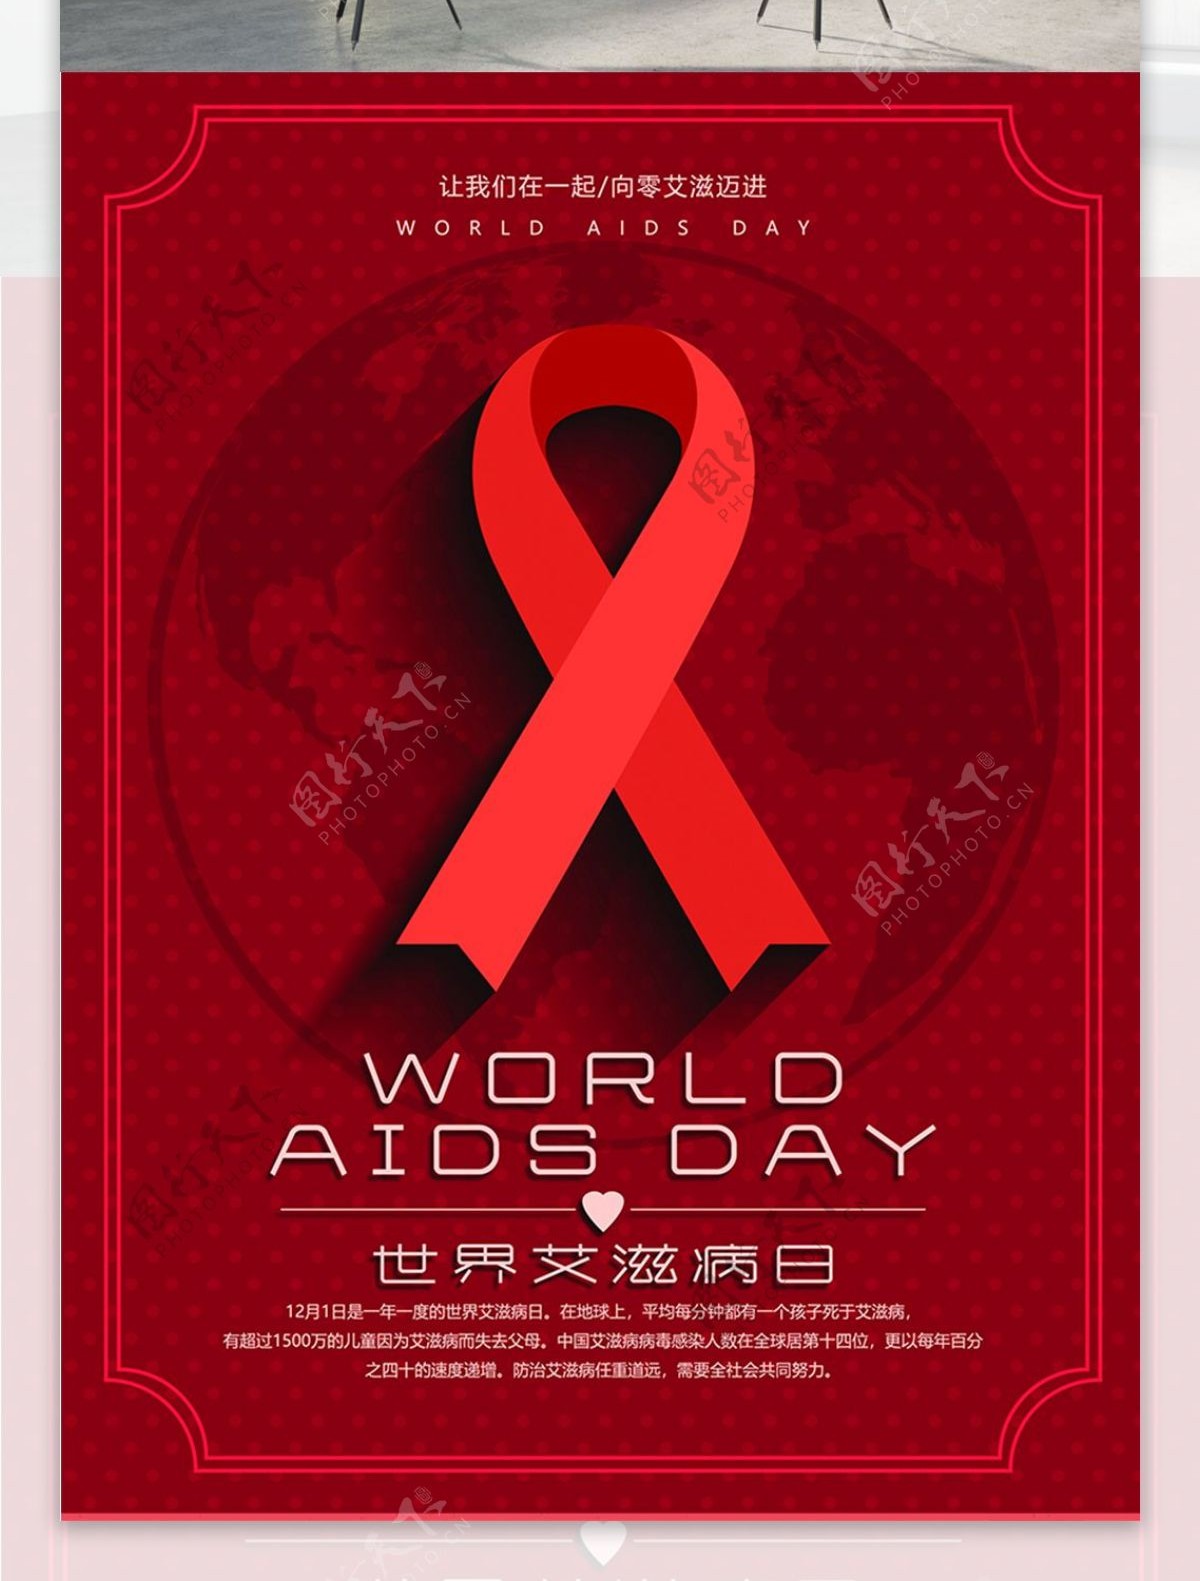 世界艾滋病日红色公益宣传海报psd源文件